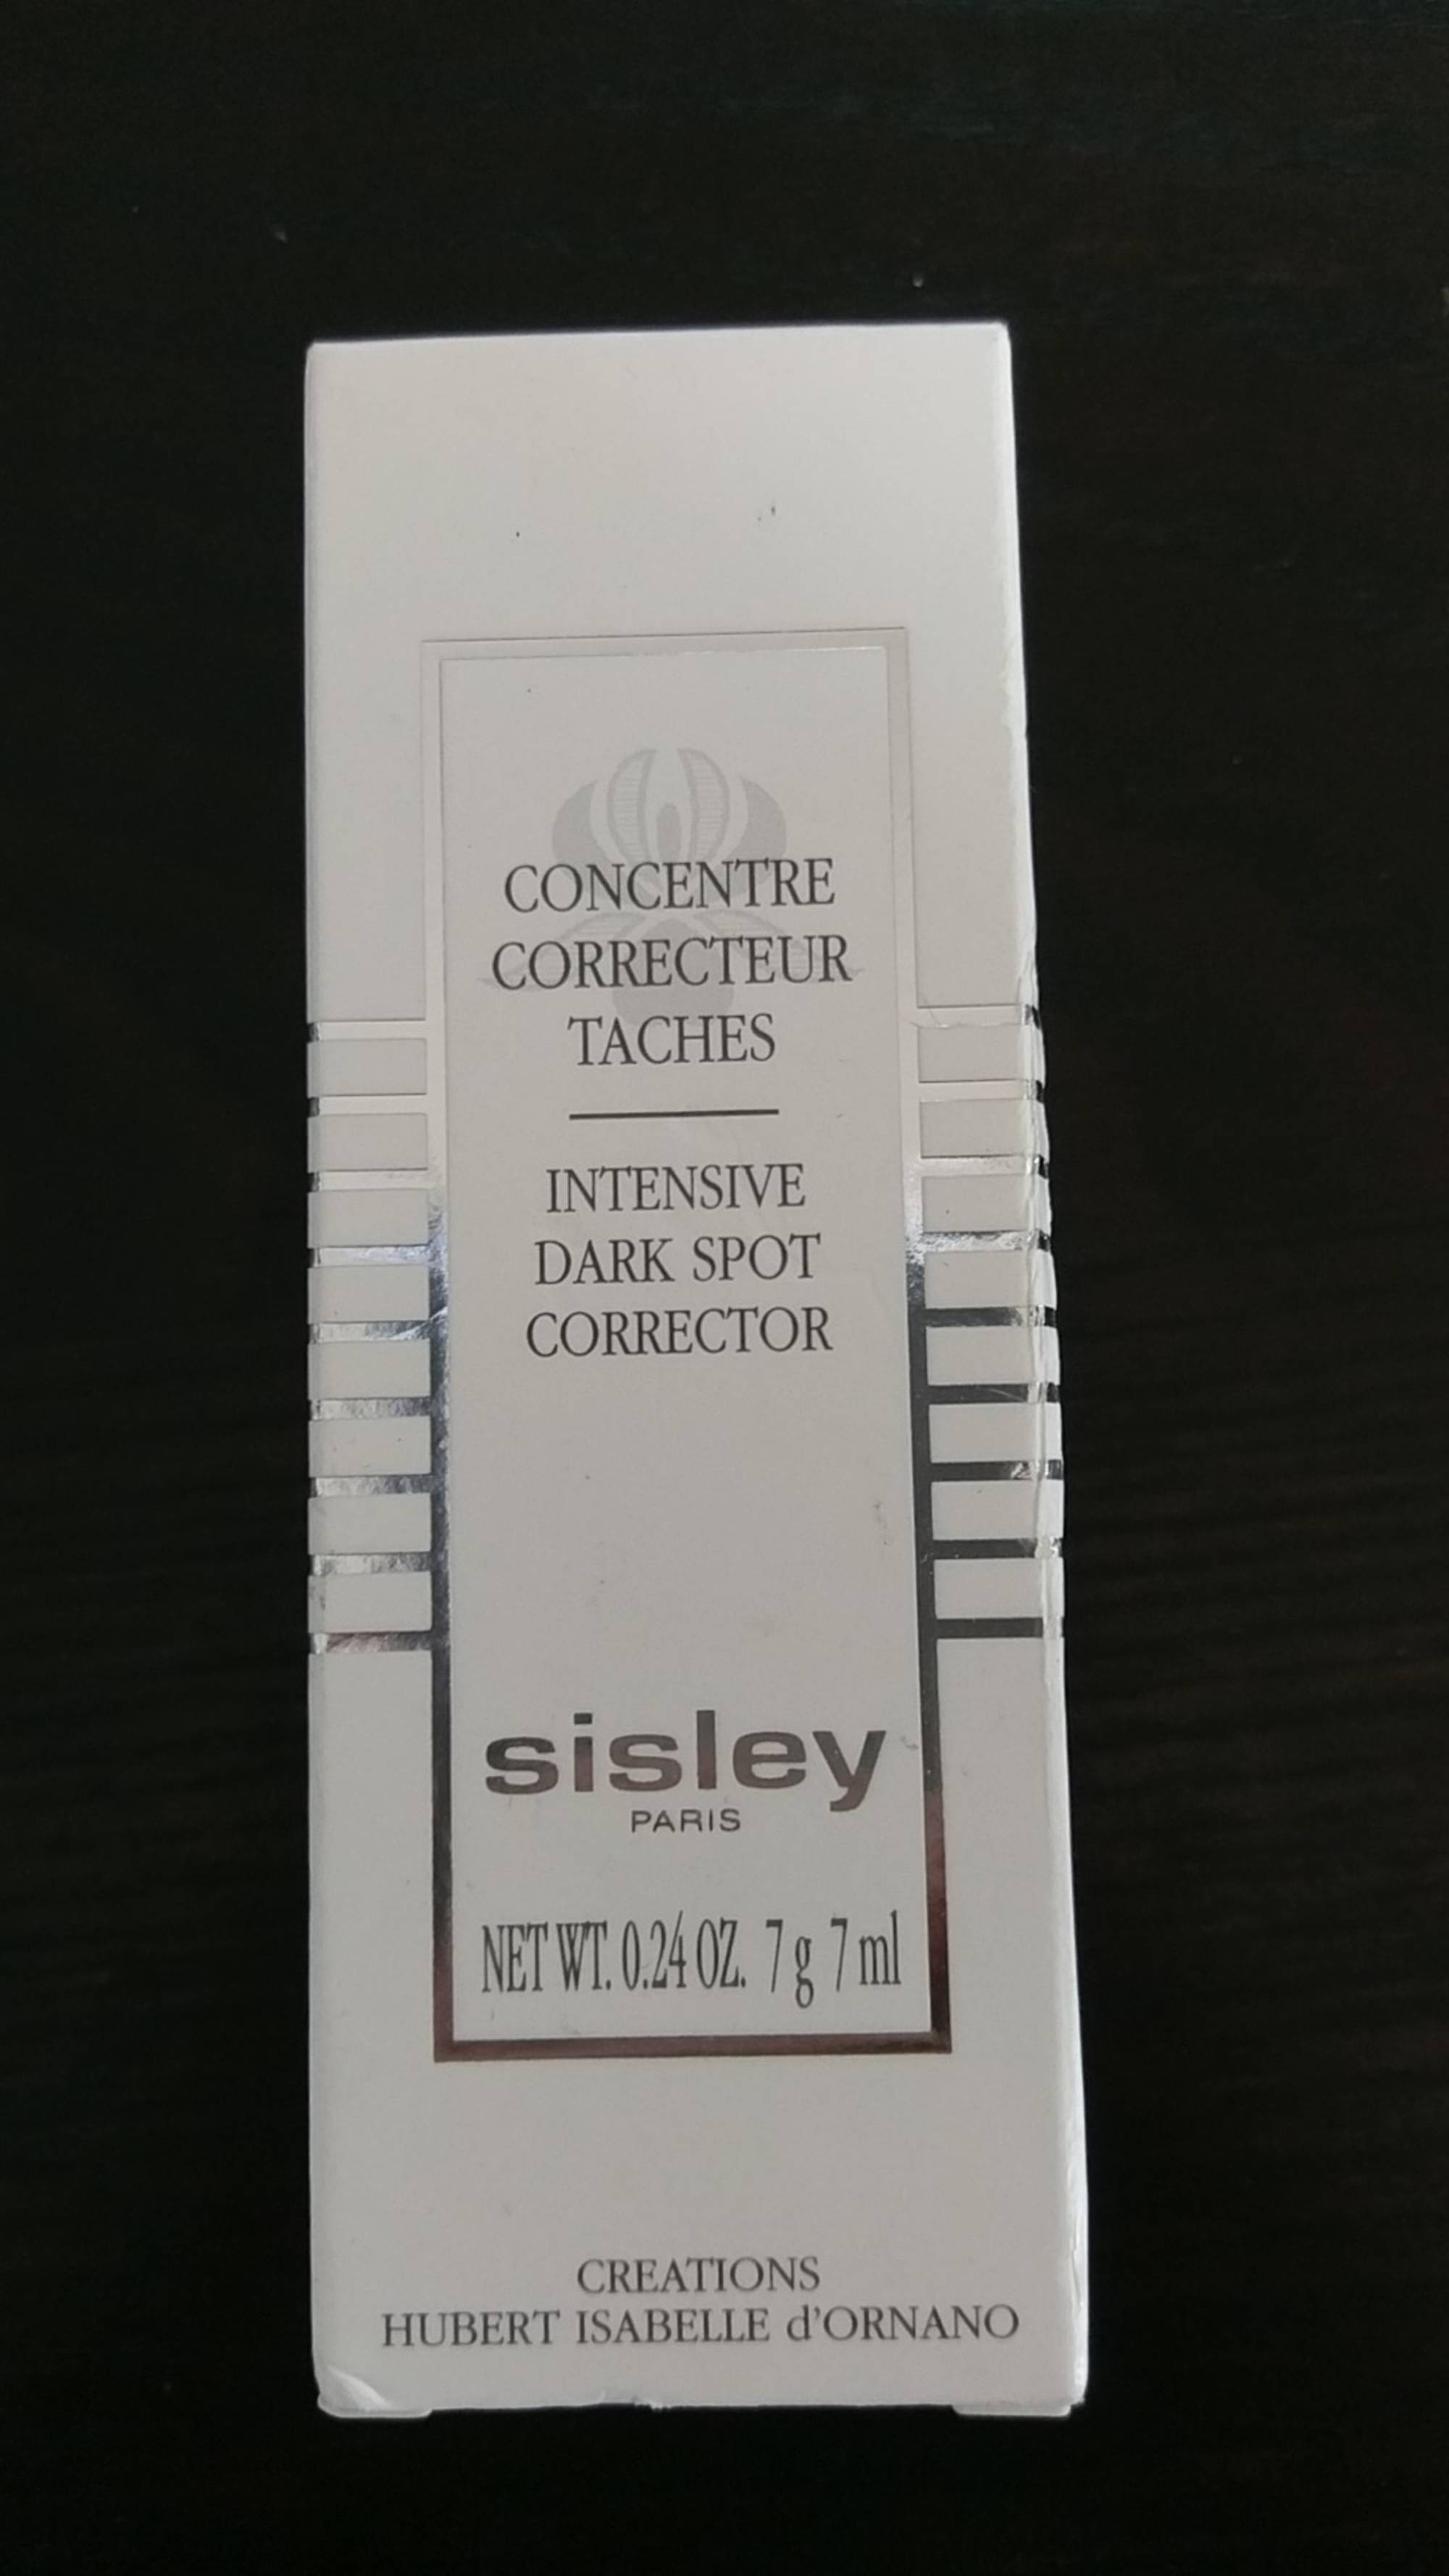 SISLEY - Concentré correcteur taches